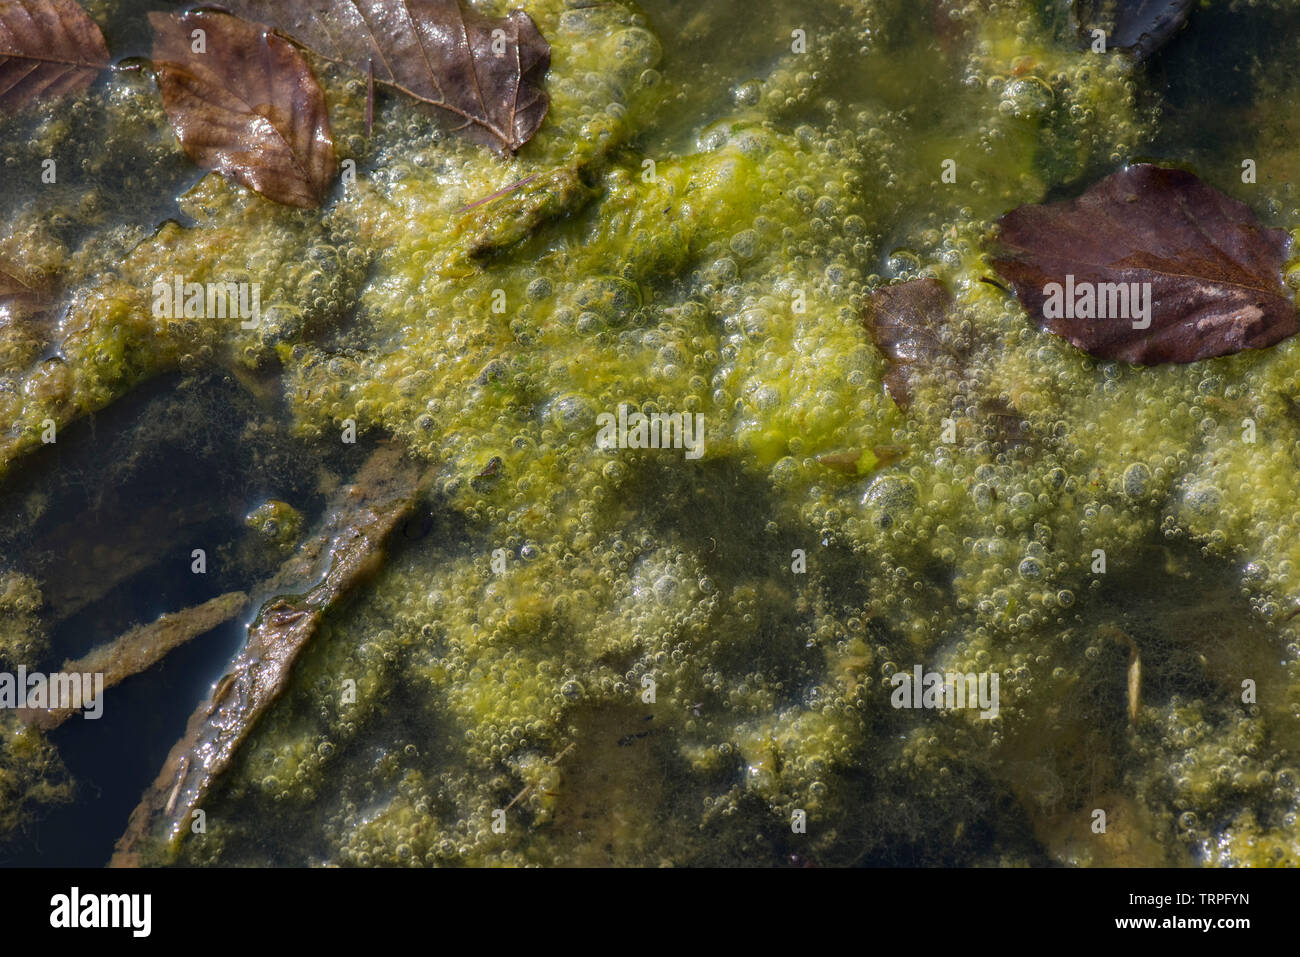 Alghe filamentose o coperta di erbacce bolle di ossigeno a formare in crescita ad alta densità sulla superficie di un laghetto in giardino Foto Stock